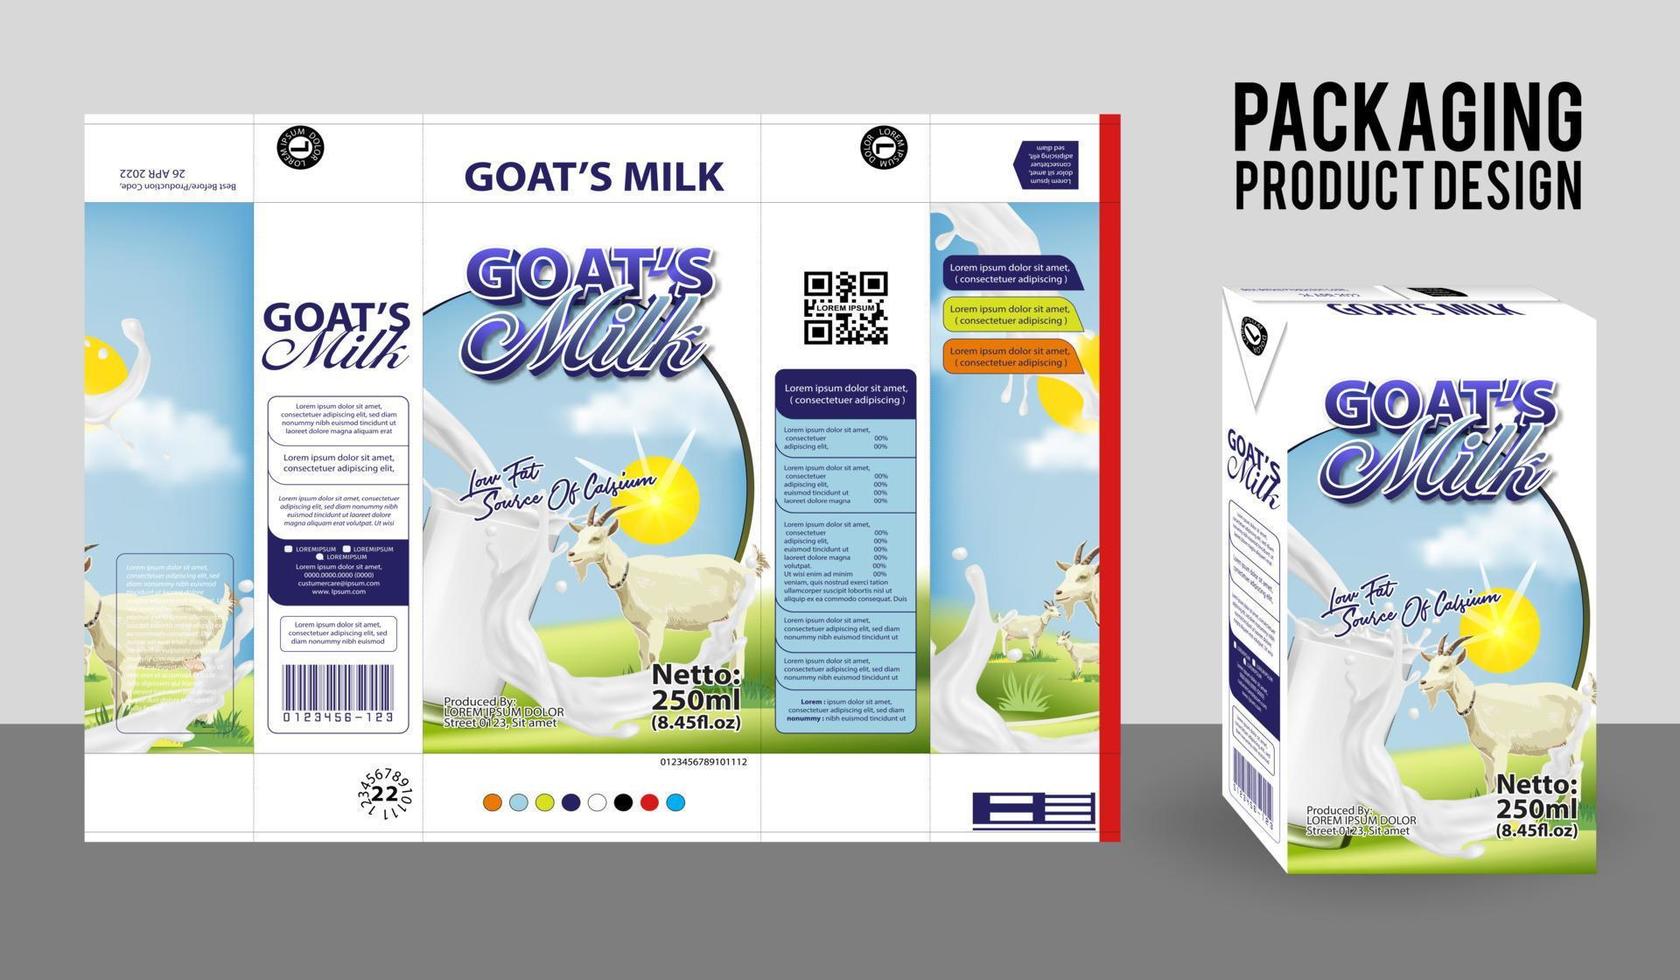 étiquette d'emballage du produit laitier de chèvre. illustration de produit alimentaire, conception eps 10 vecteur